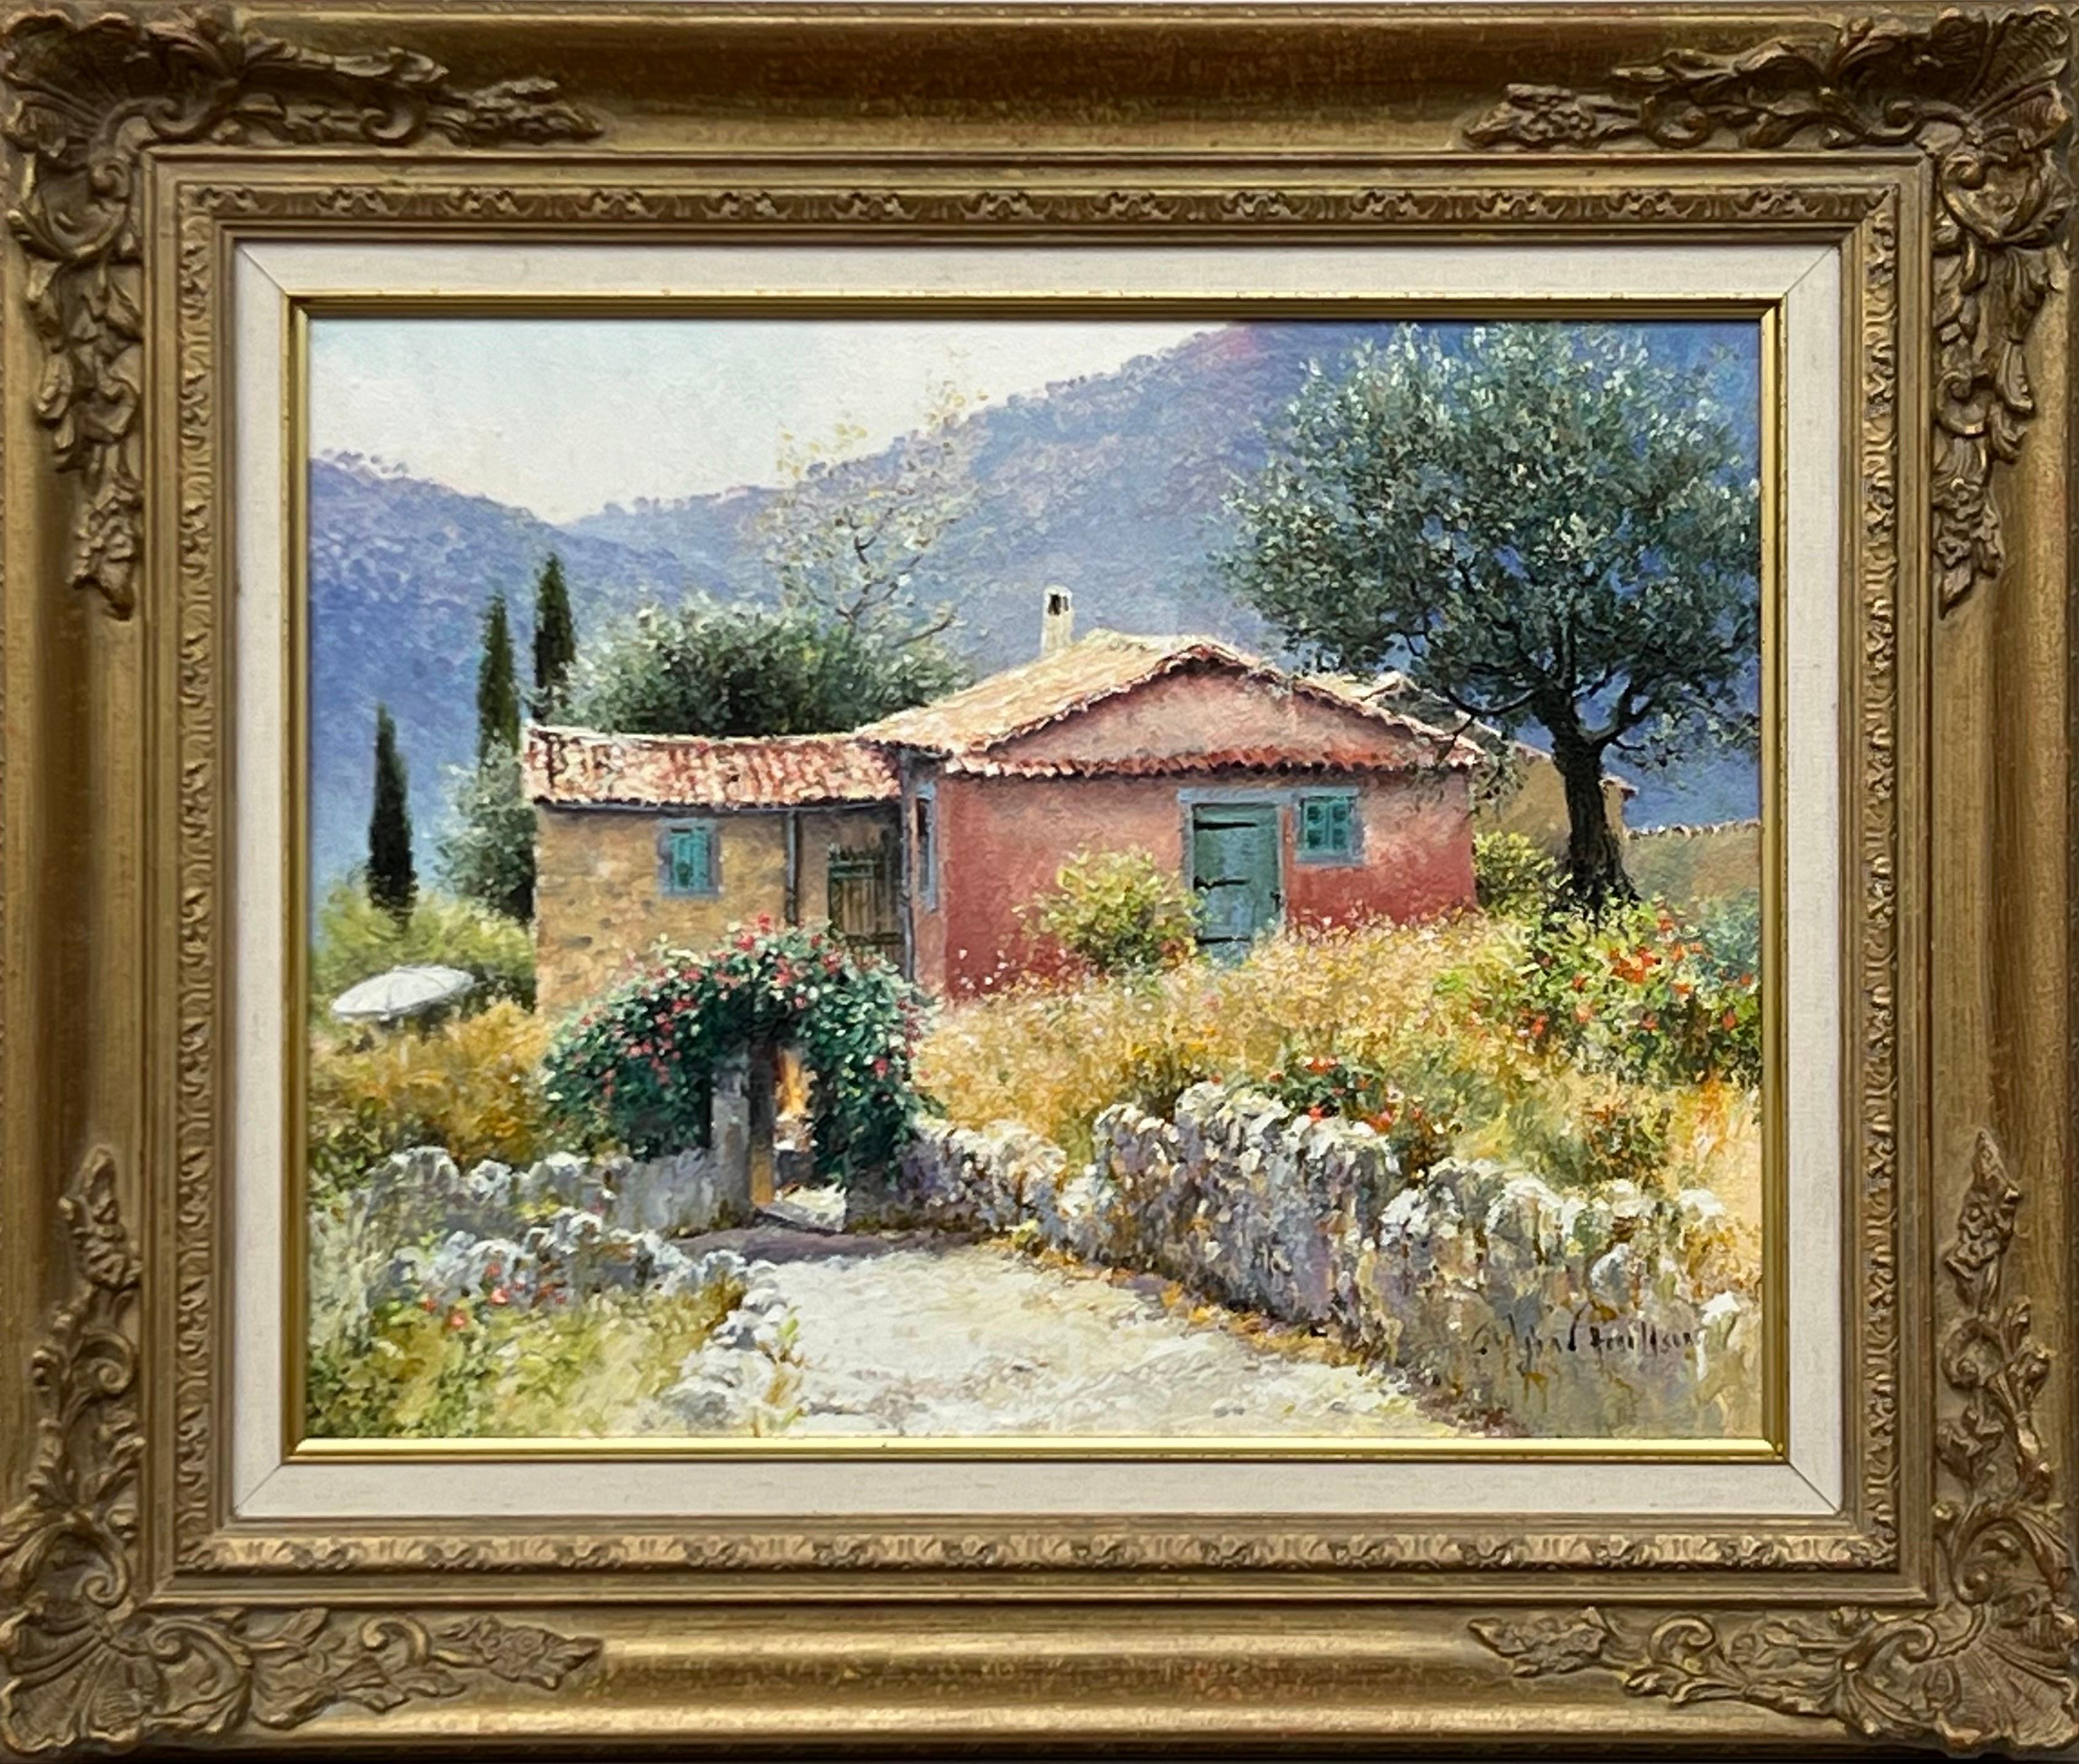 Landscape Painting John Donaldson - Peinture impressionniste de paysage de cottage toscan avec fleurs et arbres en Italie